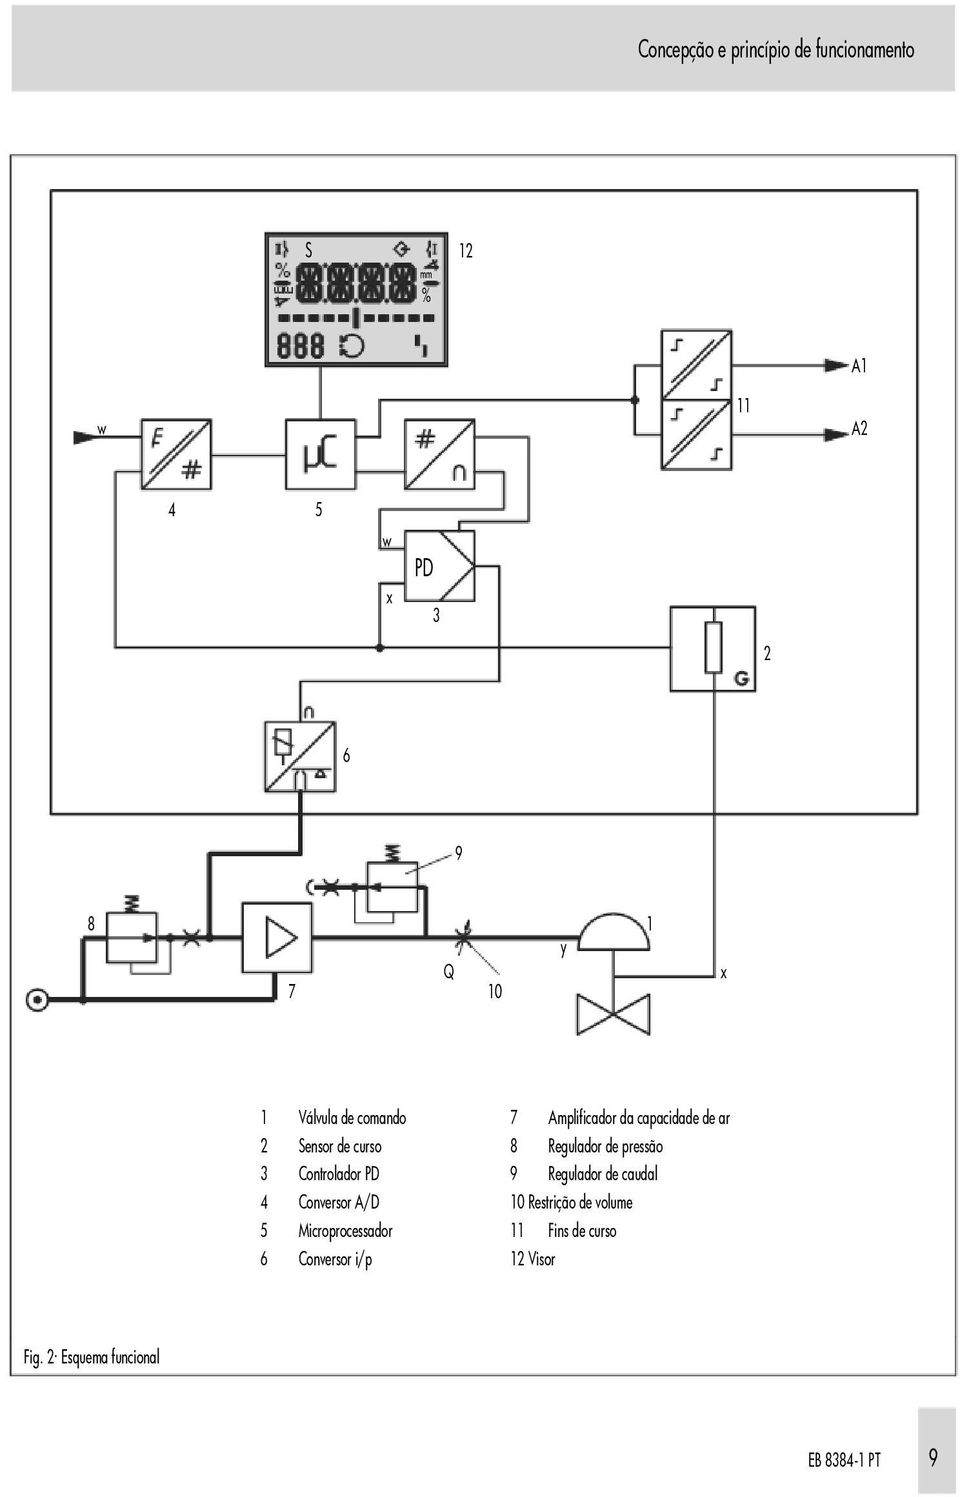 pressão 3 Controlador PD 9 Regulador de caudal 4 Conversor A/D 10 Restrição de volume 5